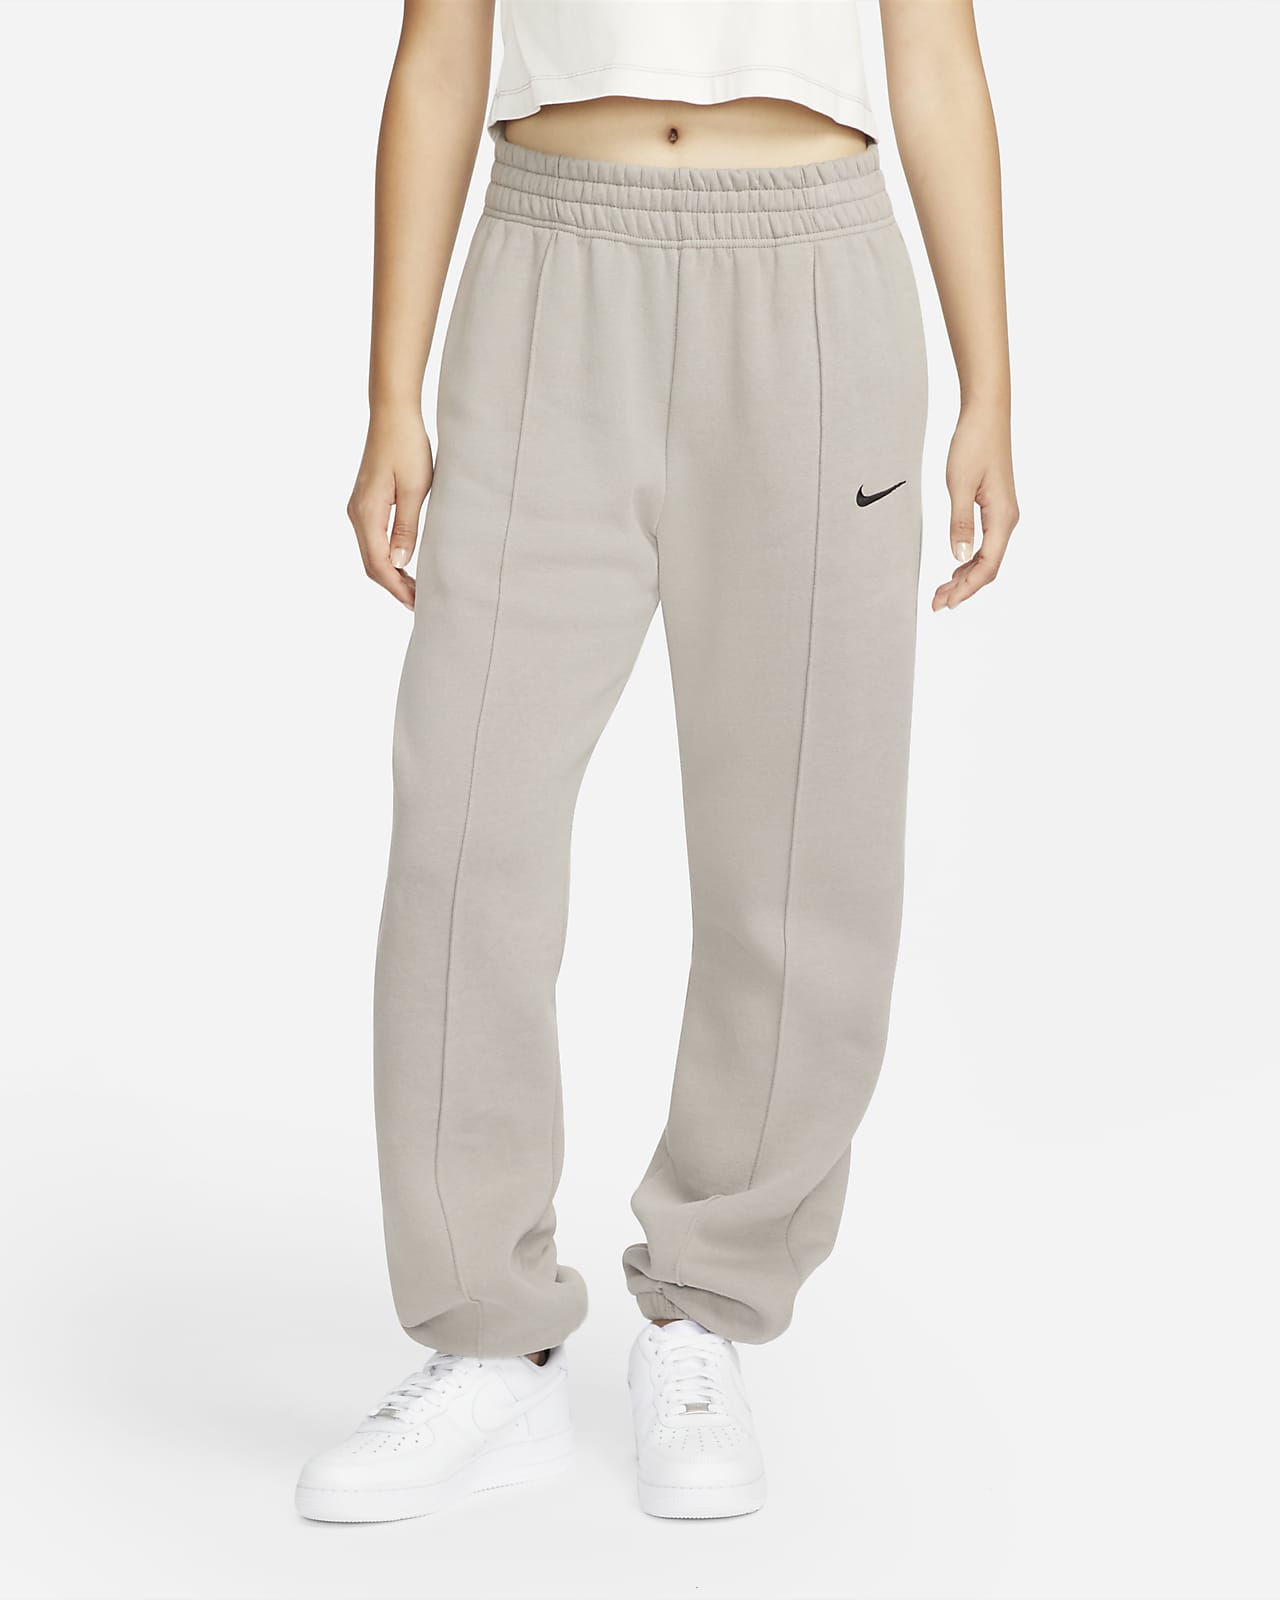 Pantalon Nike Sportswear Collection Essentials pour Femme